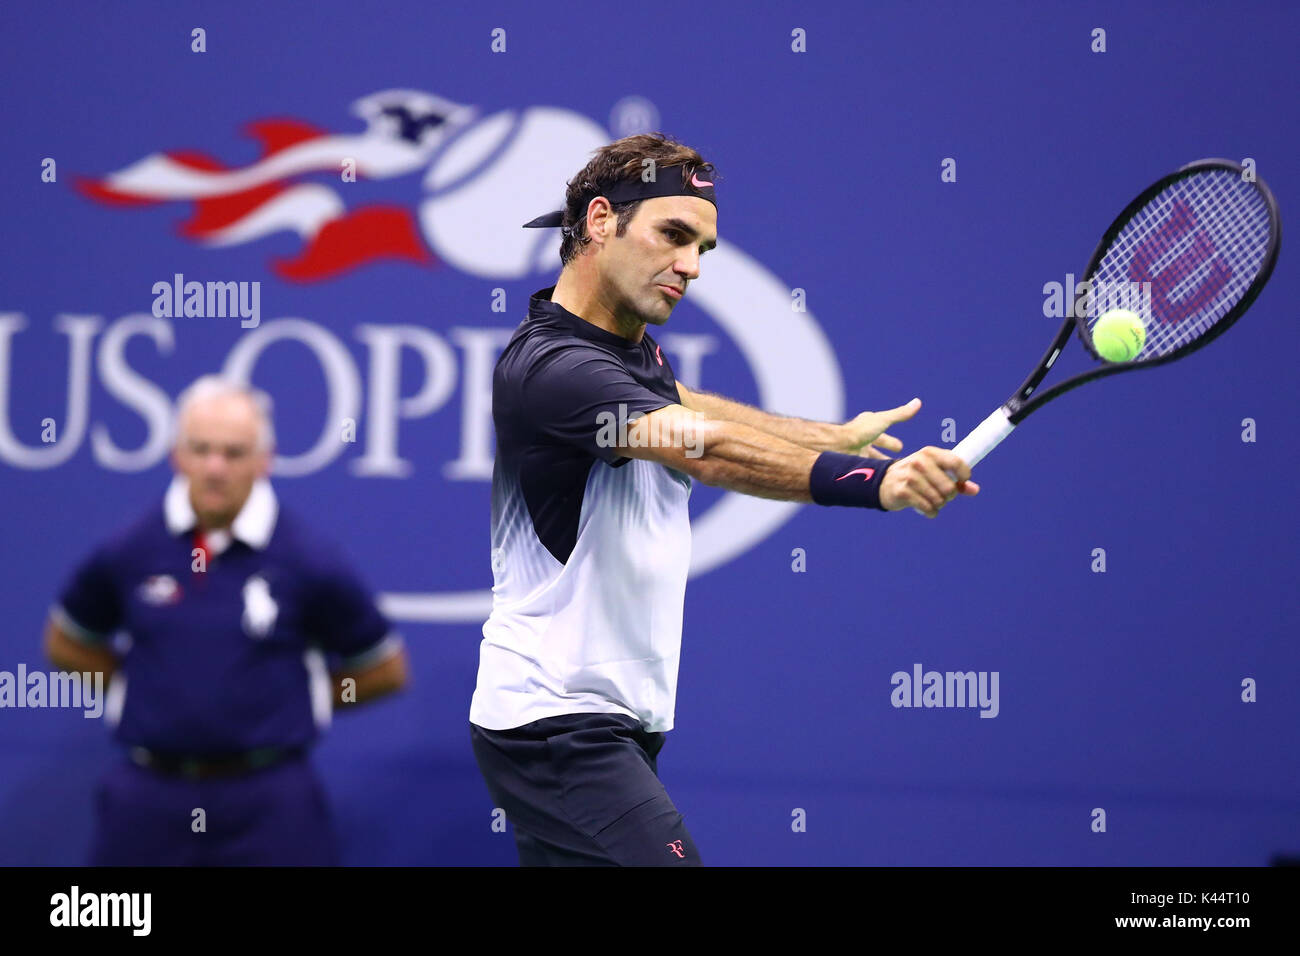 Il 2 settembre 2017, Billie Jean King National Tennis Center, Flushing Meadows, New York, Stati Uniti d'America; Roger Federer (SUI) durante il giorno sei partita del 2017 US Open Foto Stock